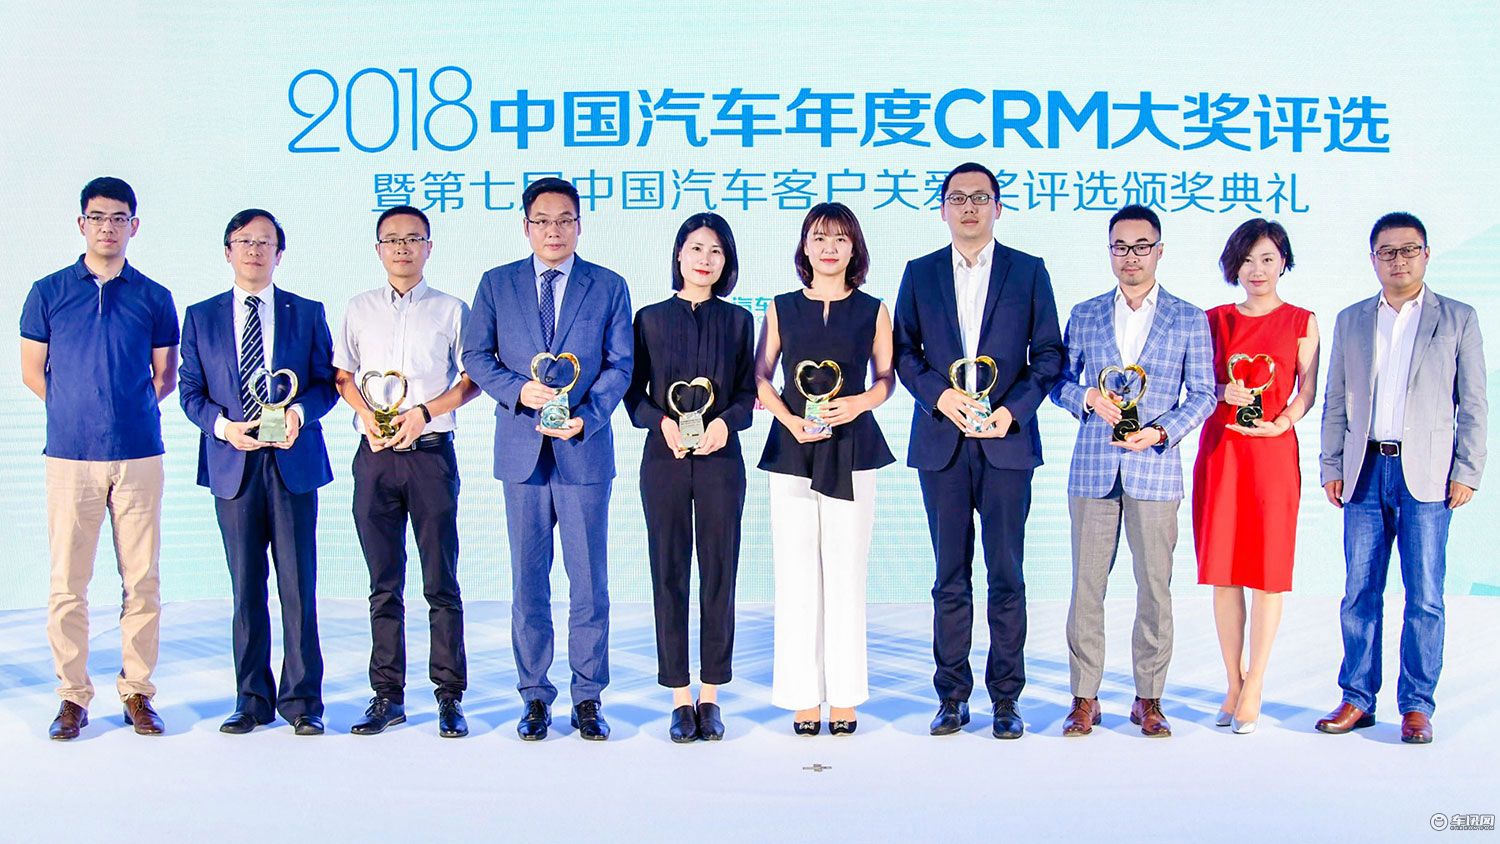 2018中国汽车年度CRM大奖揭晓 8车企获奖